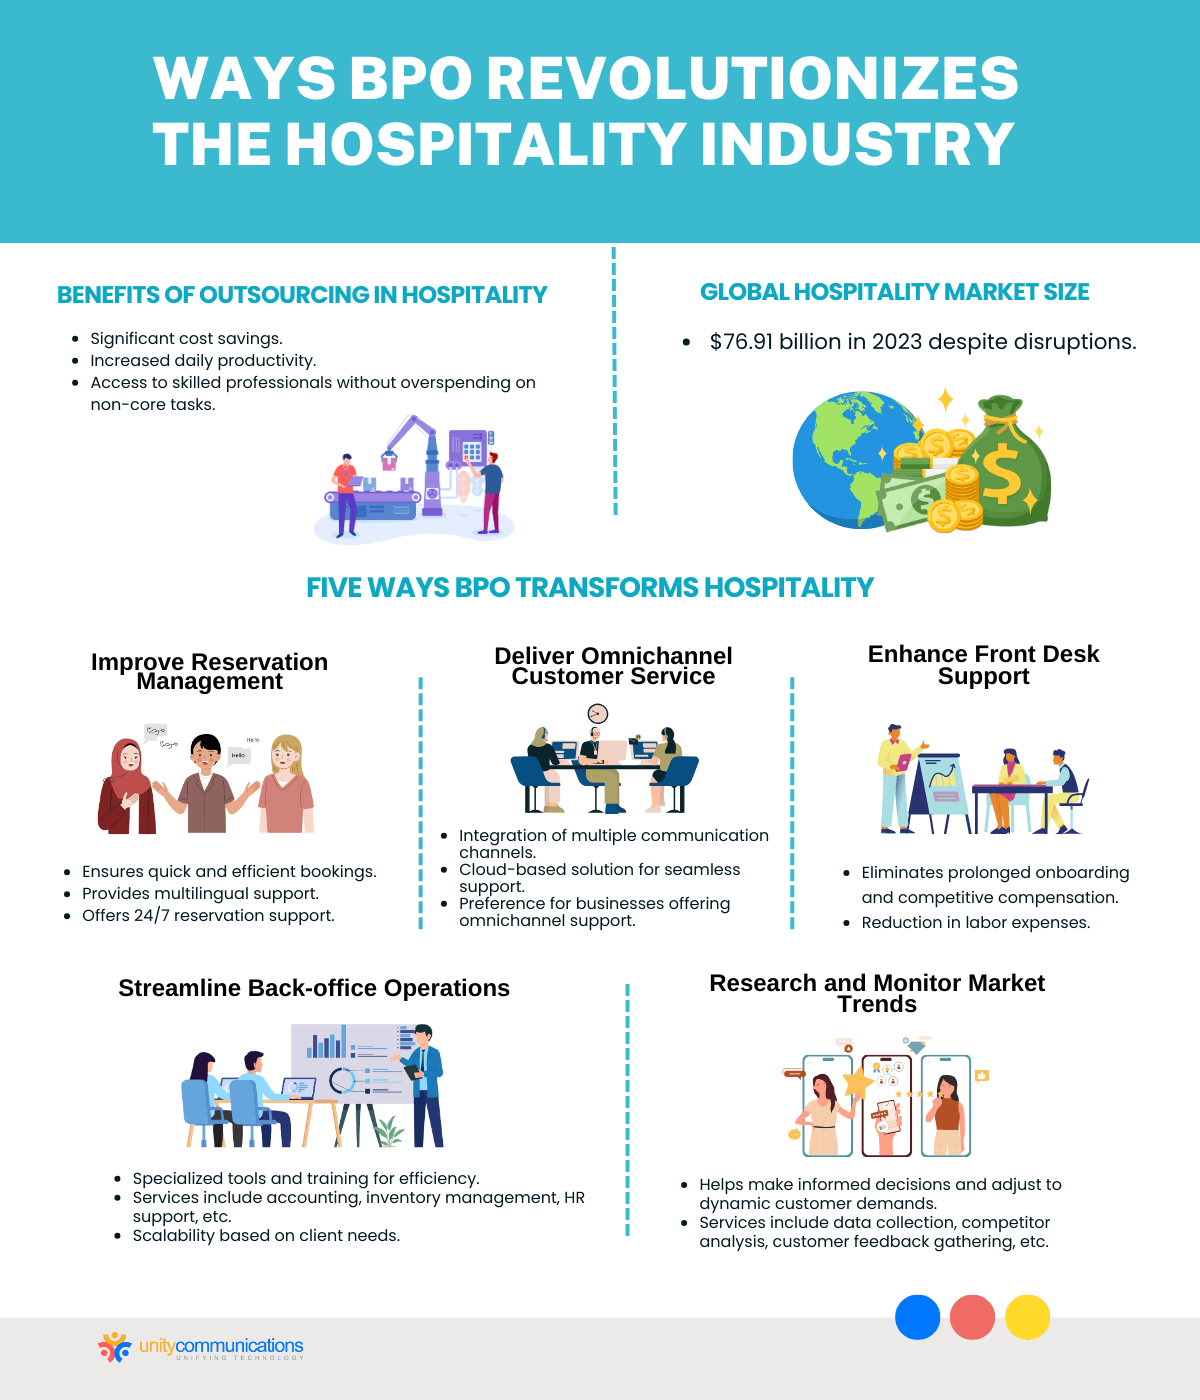 Ways BPO Revolutionizes the Hospitality Industry